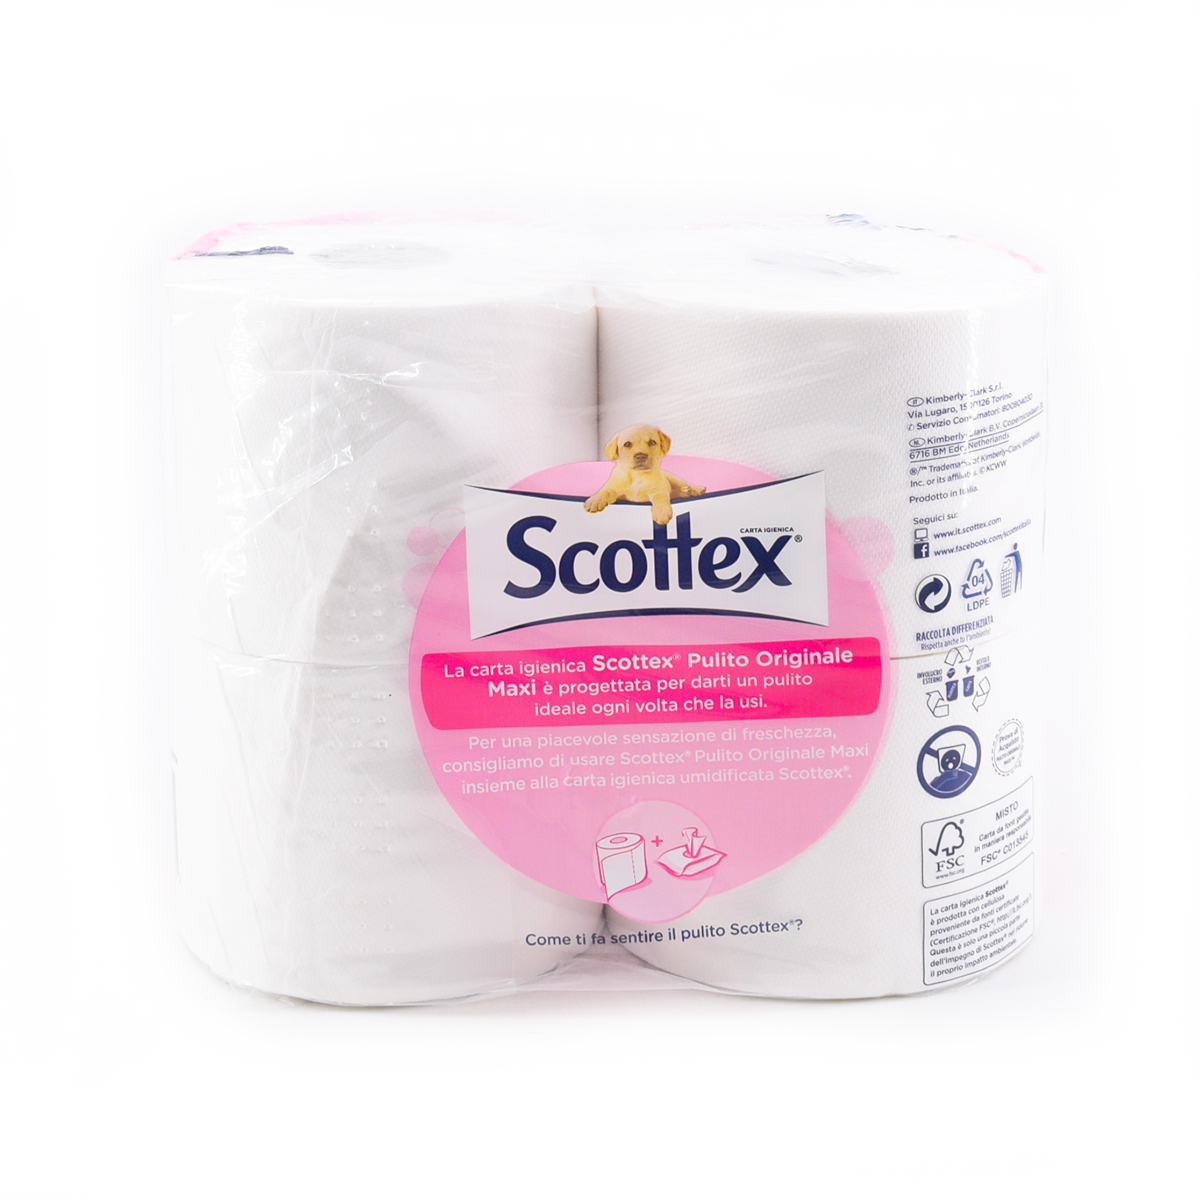 Scottex Pulito Originale Carta Igienica Maxi Xxl 4 Rotoli Paladini Otello Supermercati